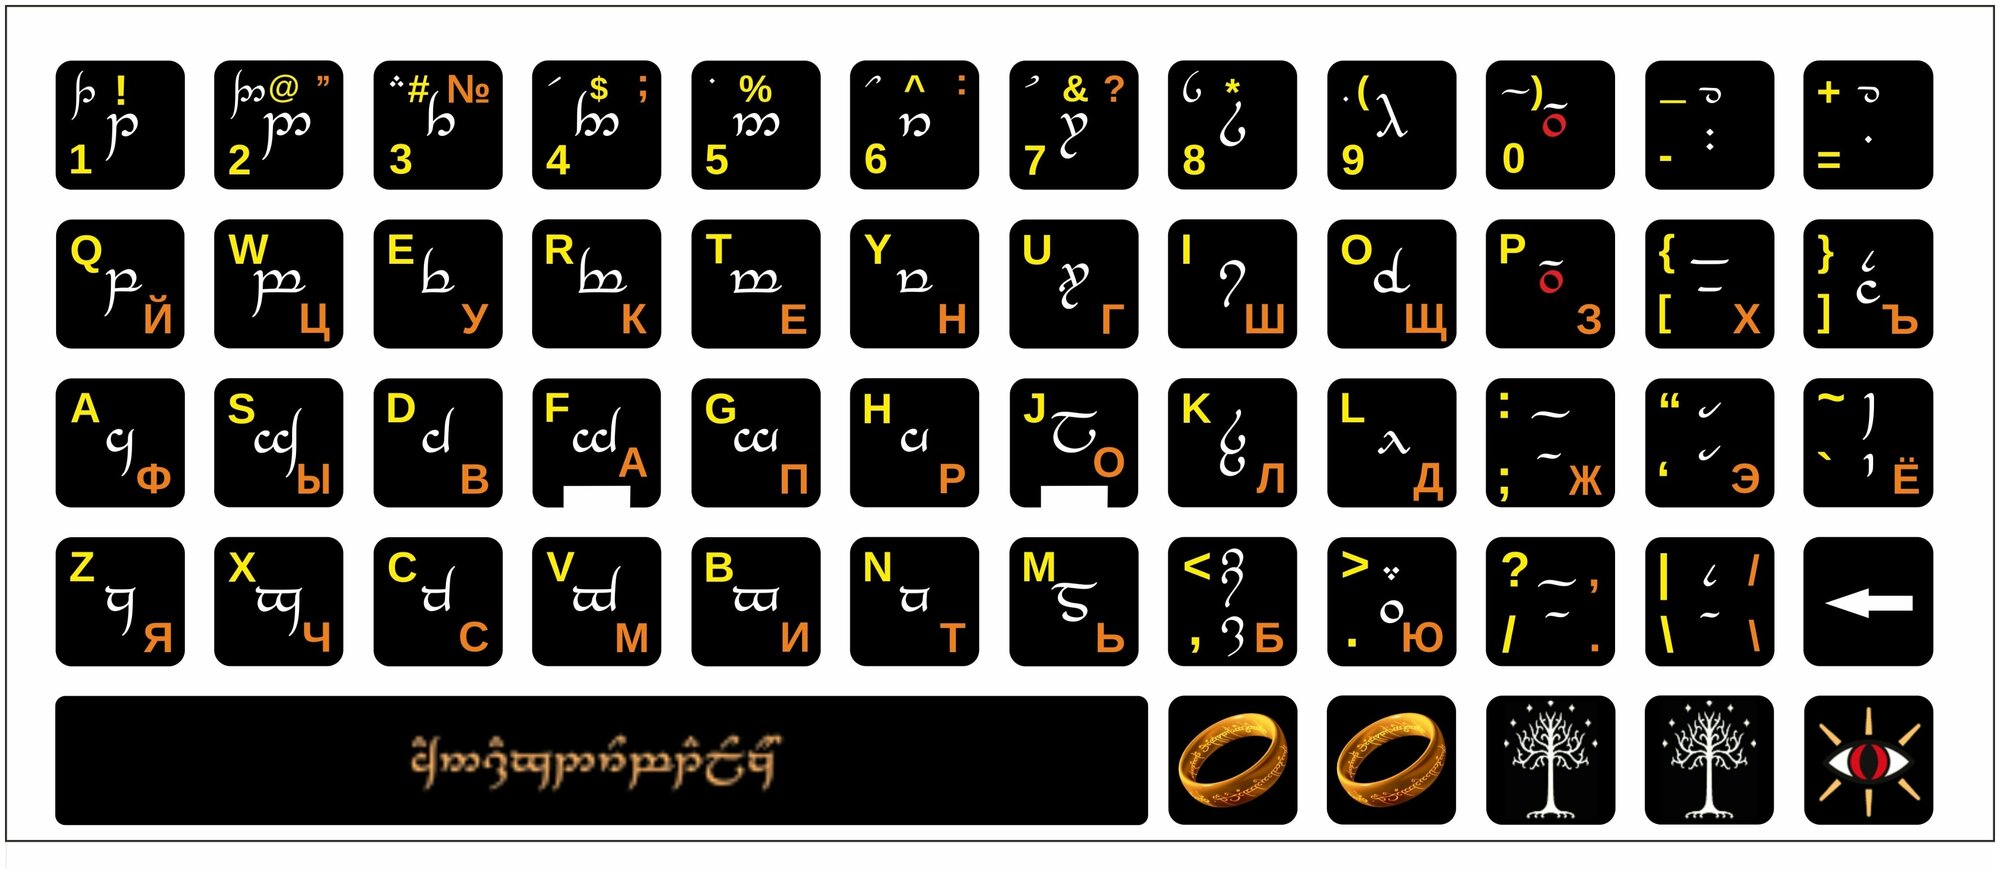 Эльфийский язык, эльфы, Фэнтези, аксесуар, милые универсальные наклейки на клавиатуру, защита клавиатуры 13x13 мм